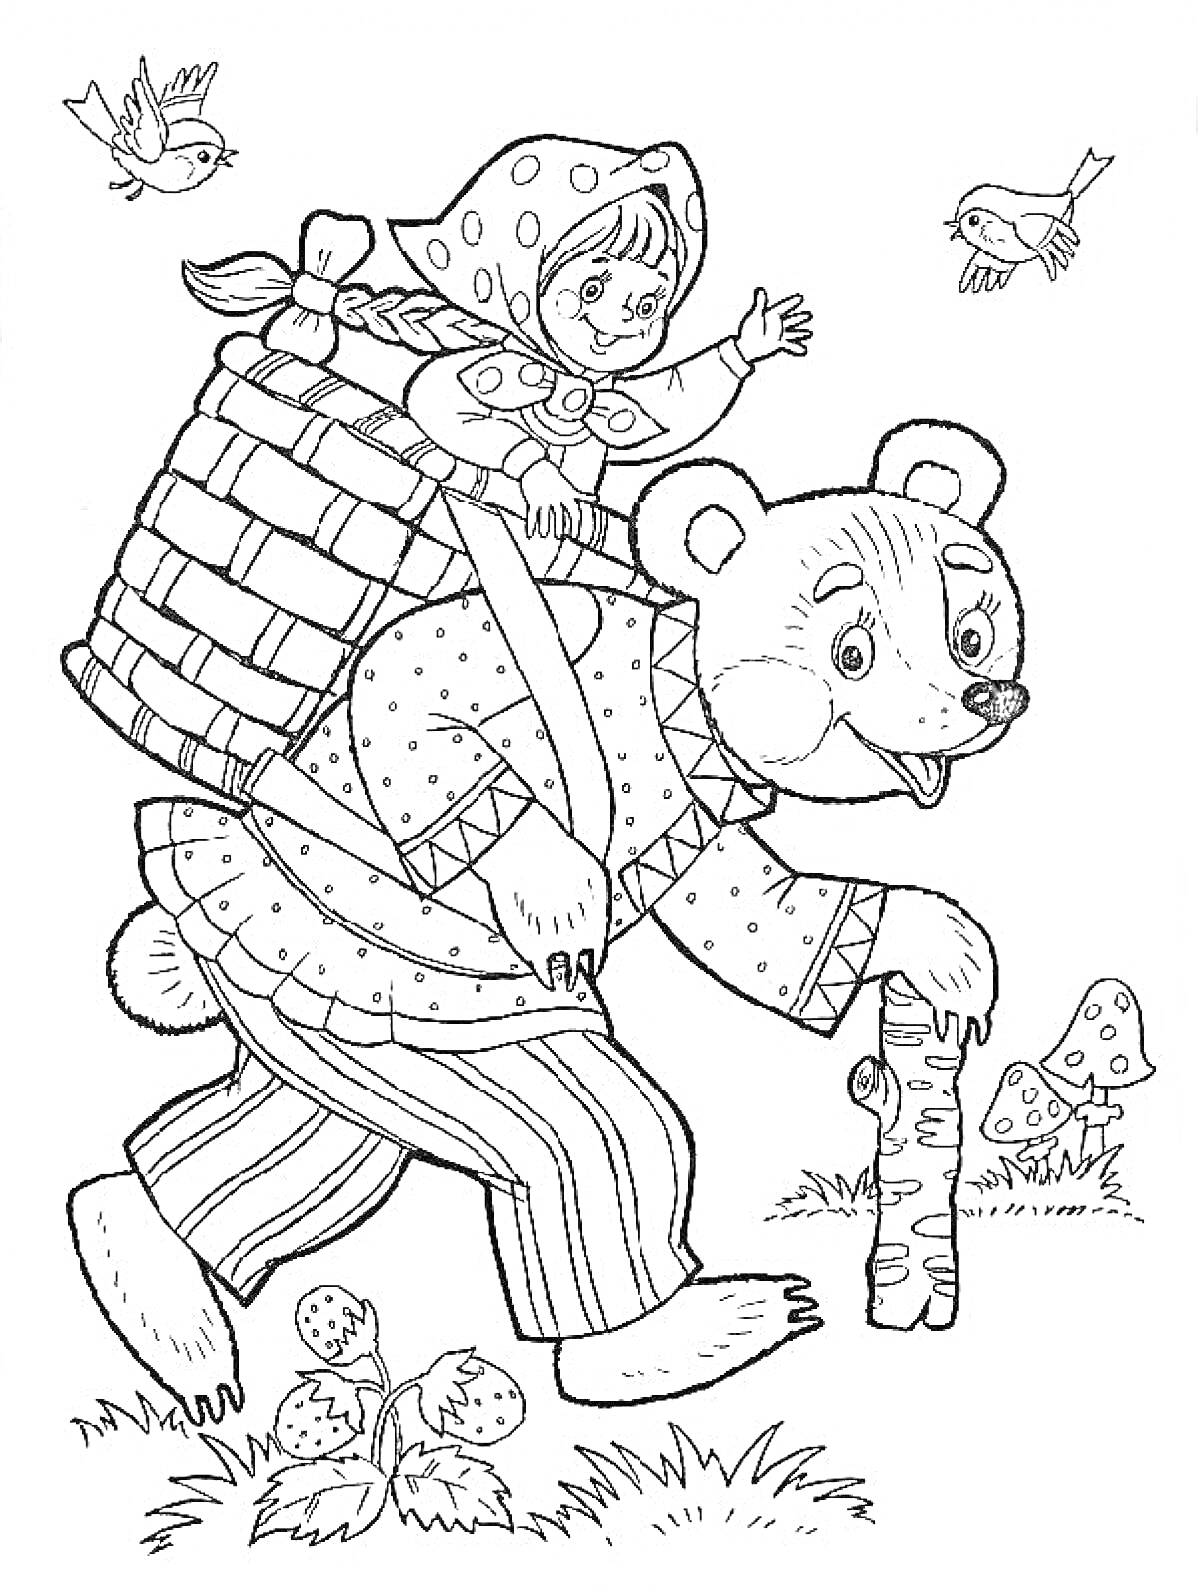 Девочка в косынке в корзине на спине у медведя с посохом, птицы, мухоморы, клубника